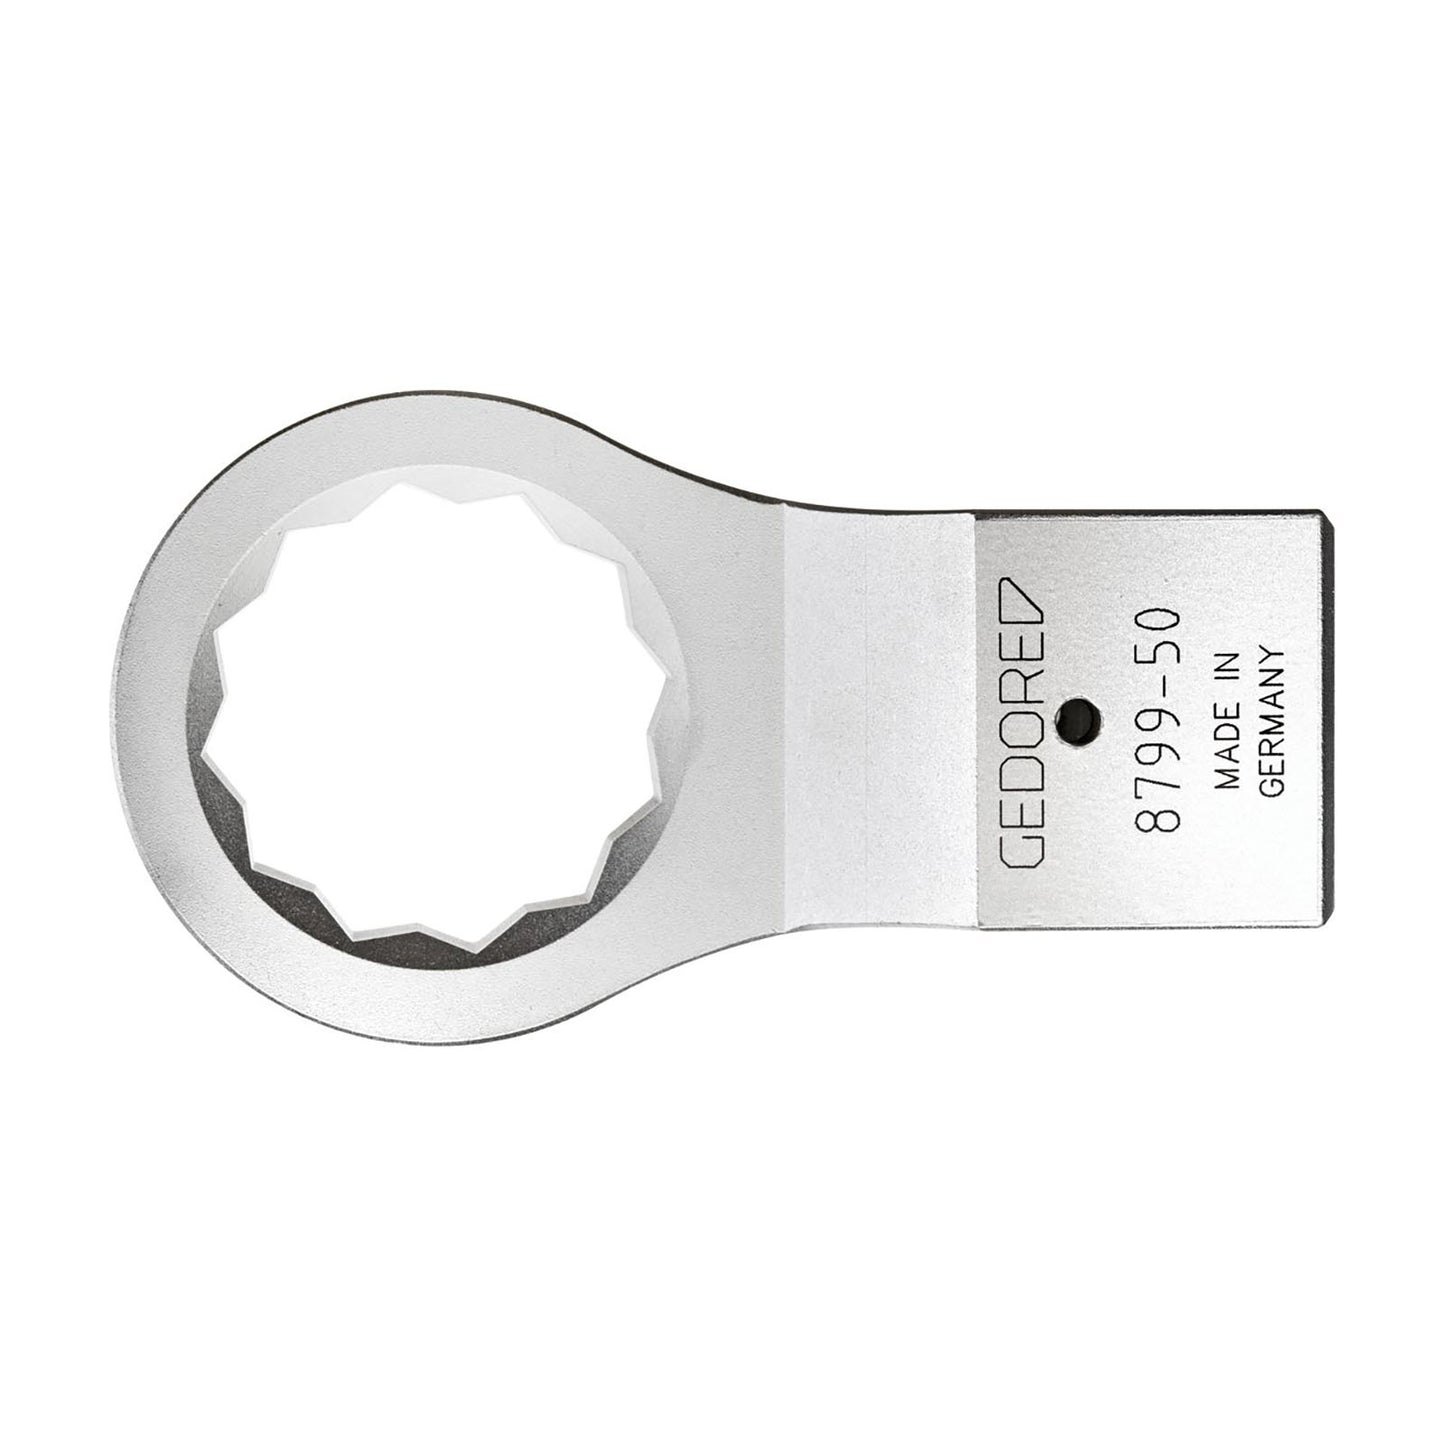 GEDORE 8799-50 - Polygonal key Z 28, 50mm (1565524)